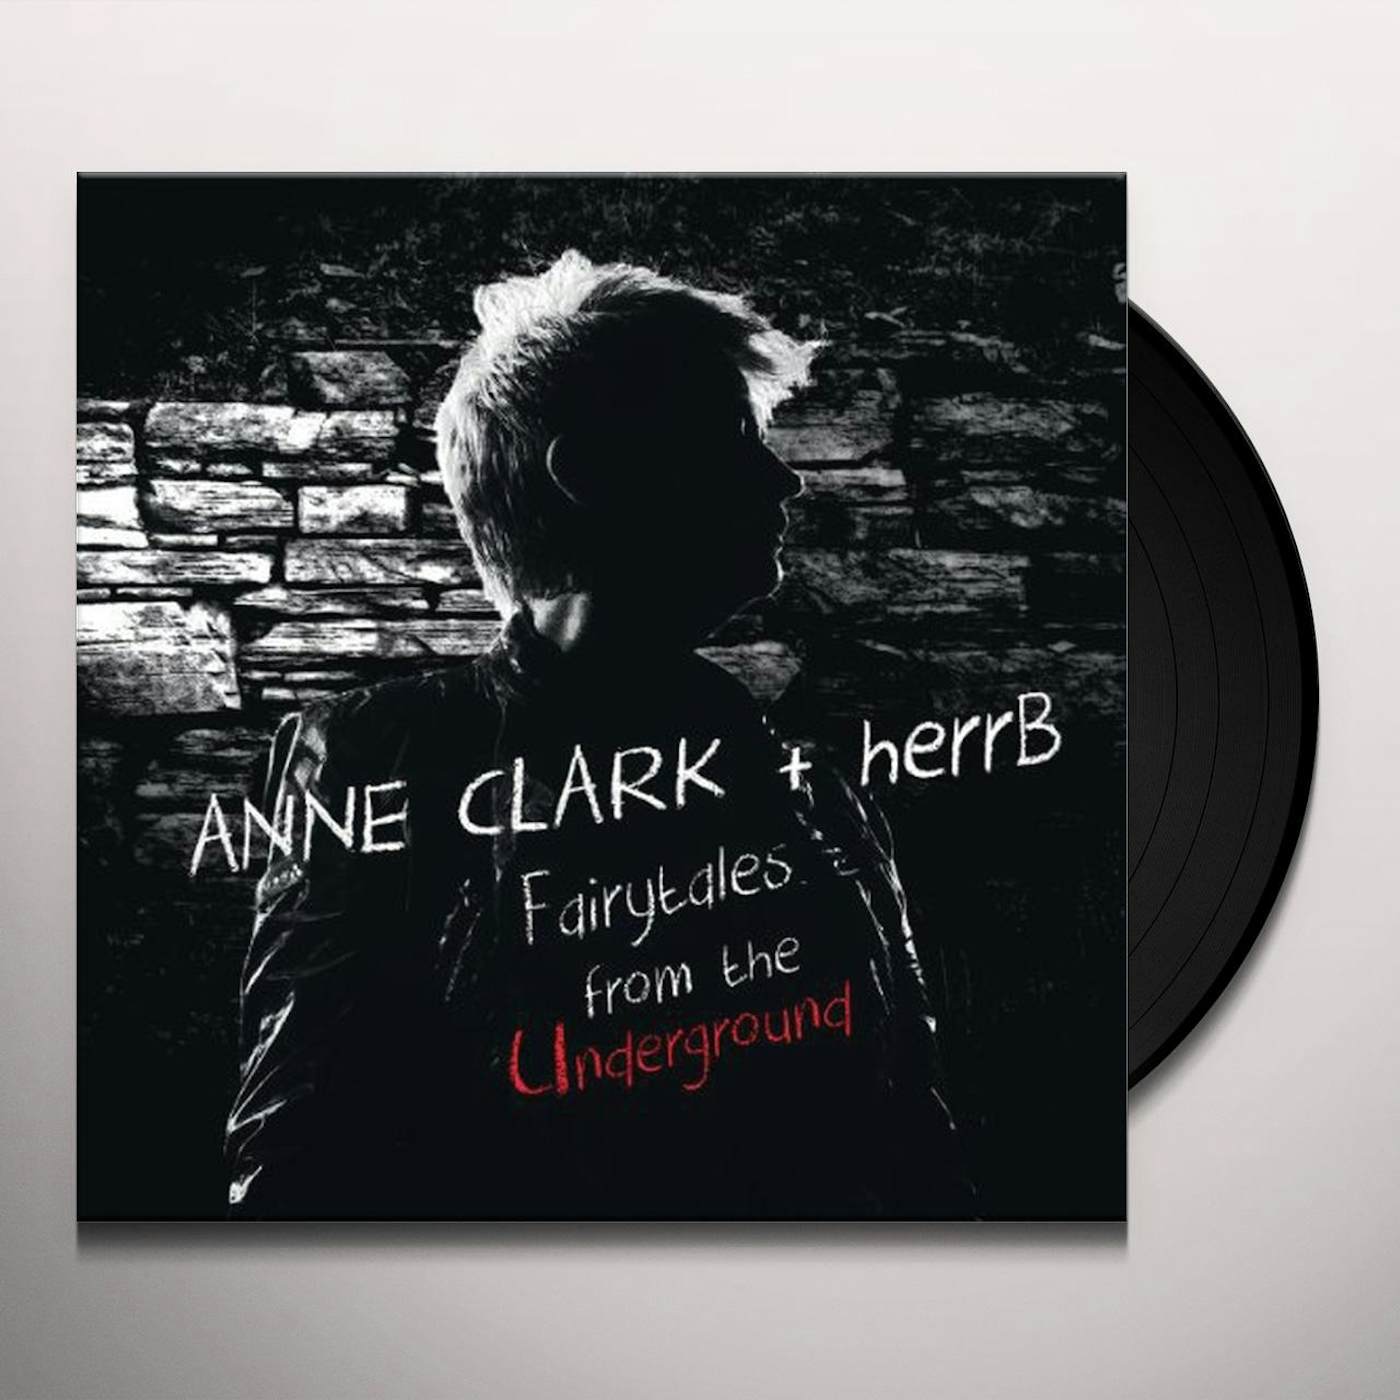 Anne Clark & Herr B Fairytales From The Underground Vinyl Record